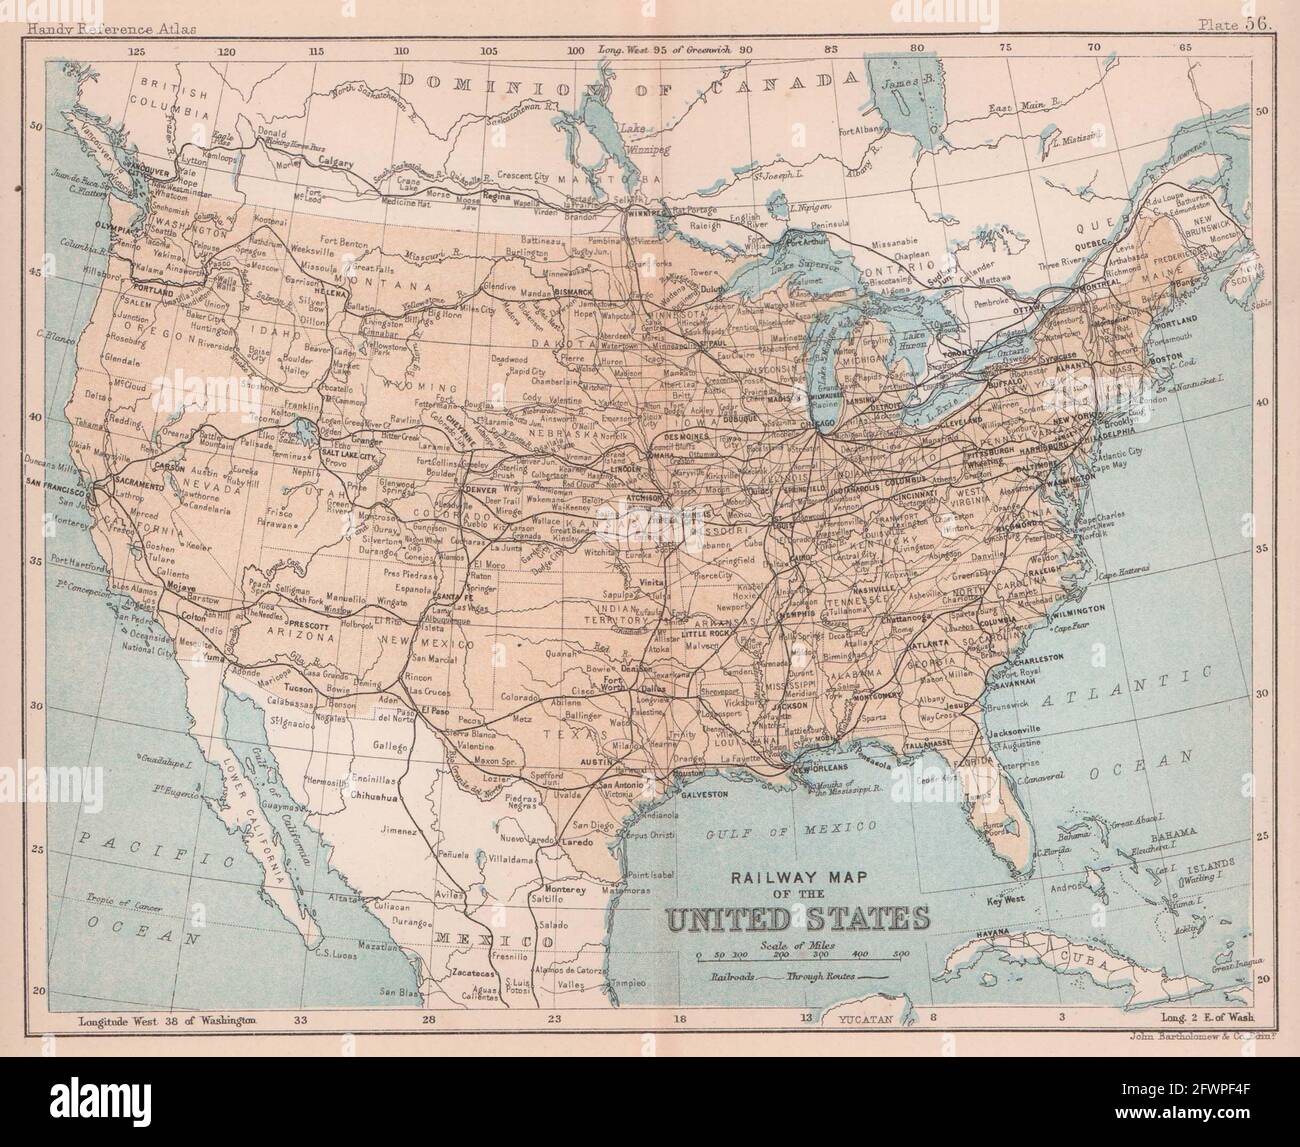 United States showing states BARTHOLOMEW 1898 old antique map plan chart USA 